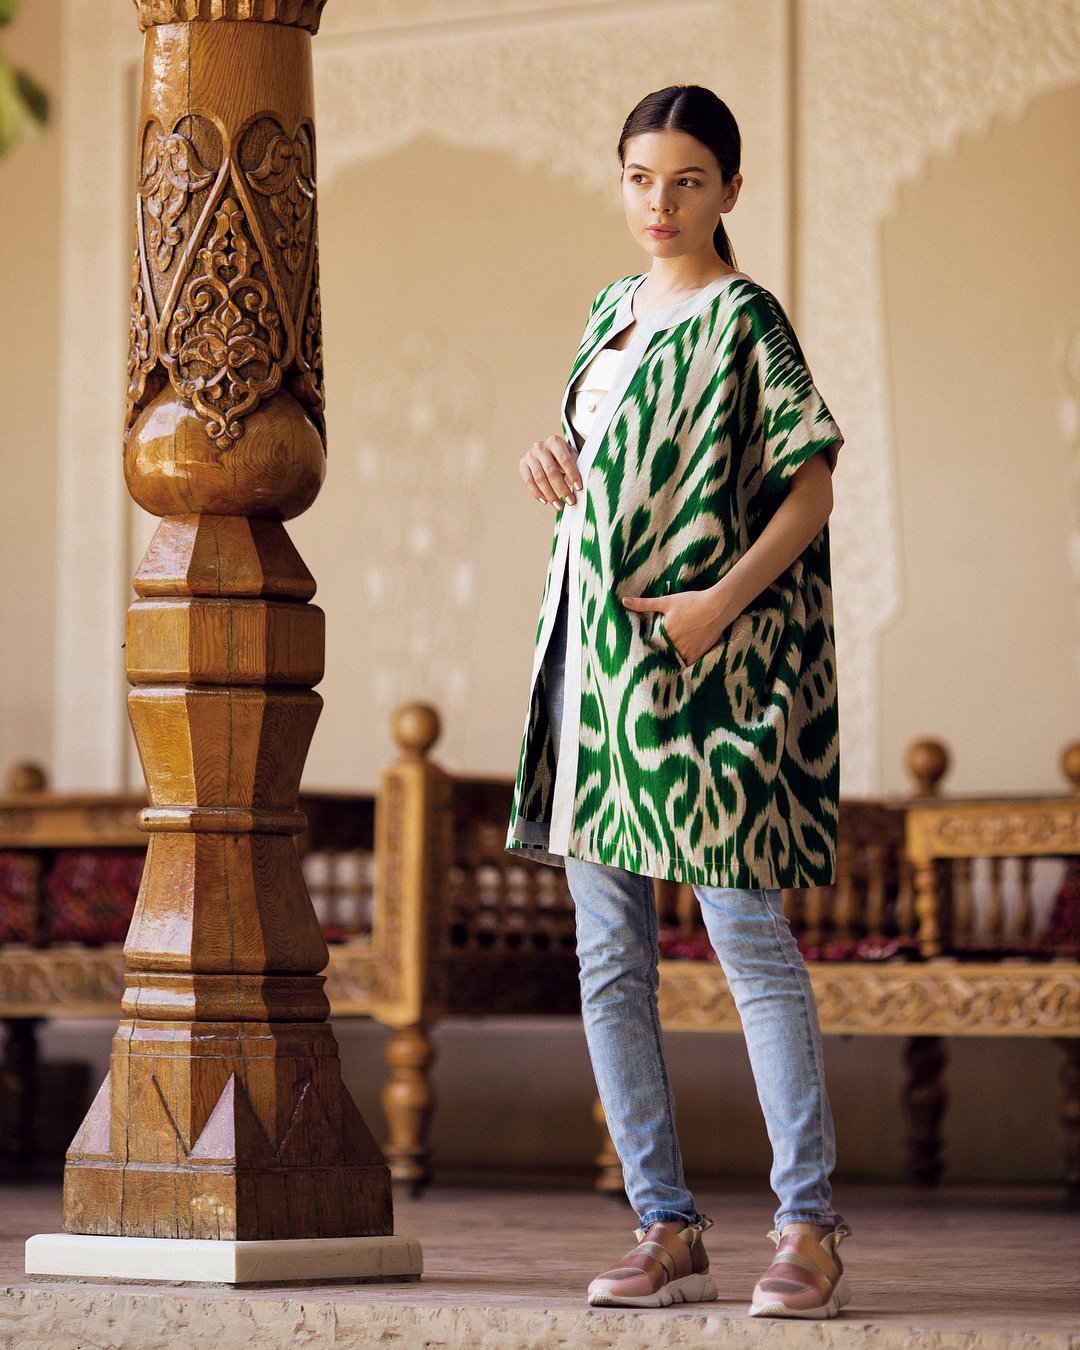 Узбекские платья со штанами фото с узором восточный